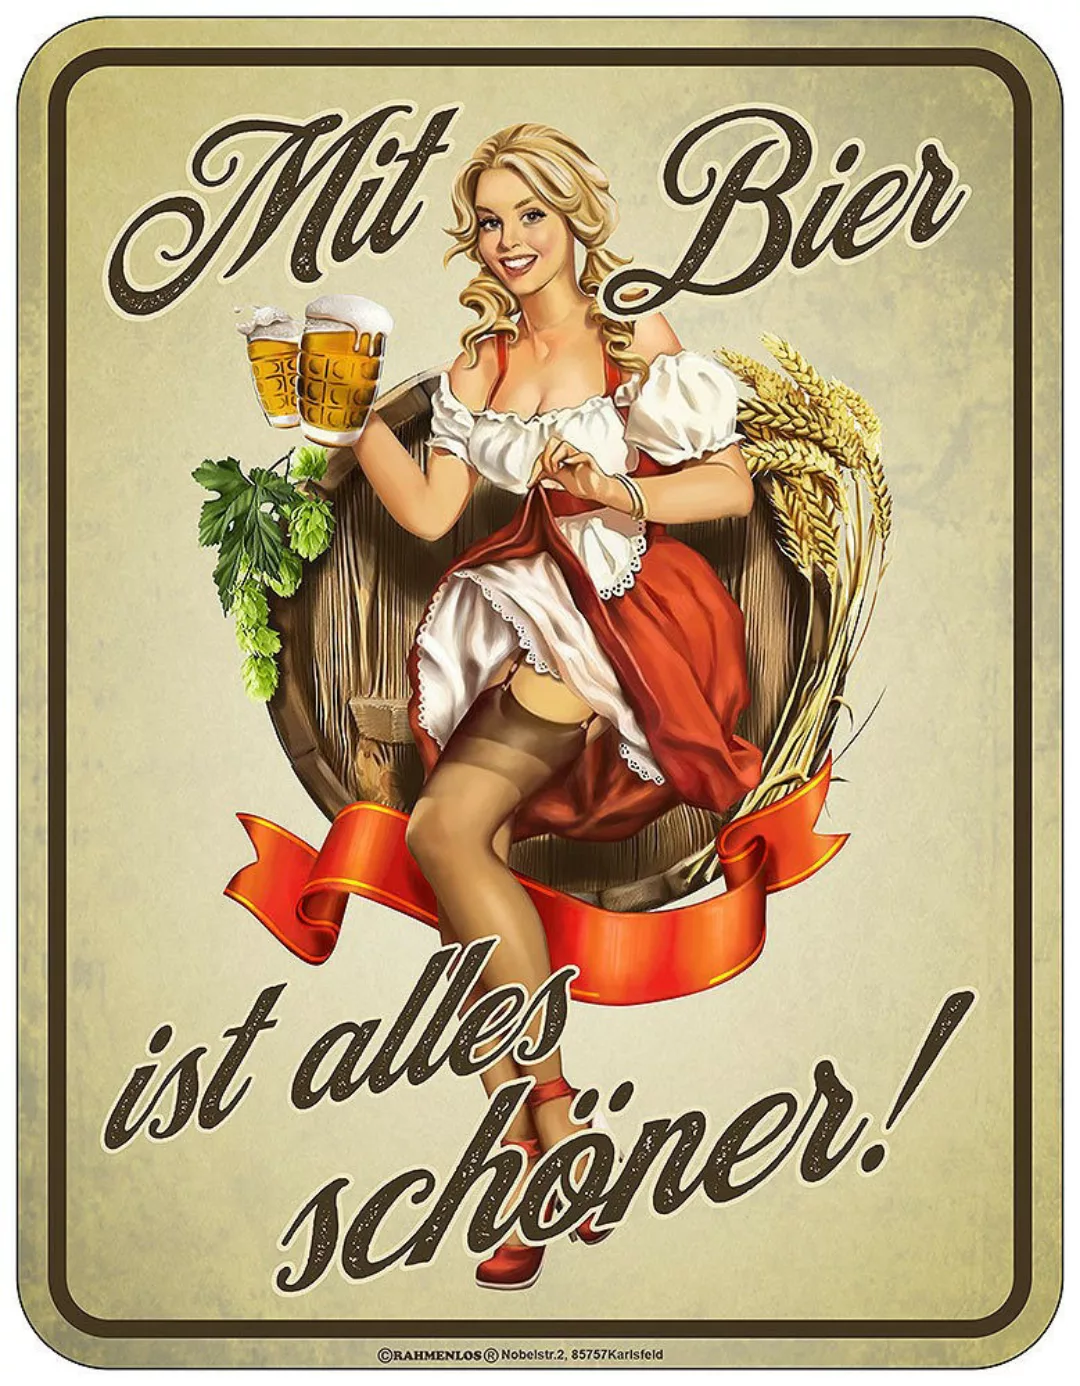 Blechschild Mit Bier ist alles schöner! Nostalgie Dekoschild Vintage 22x17c günstig online kaufen